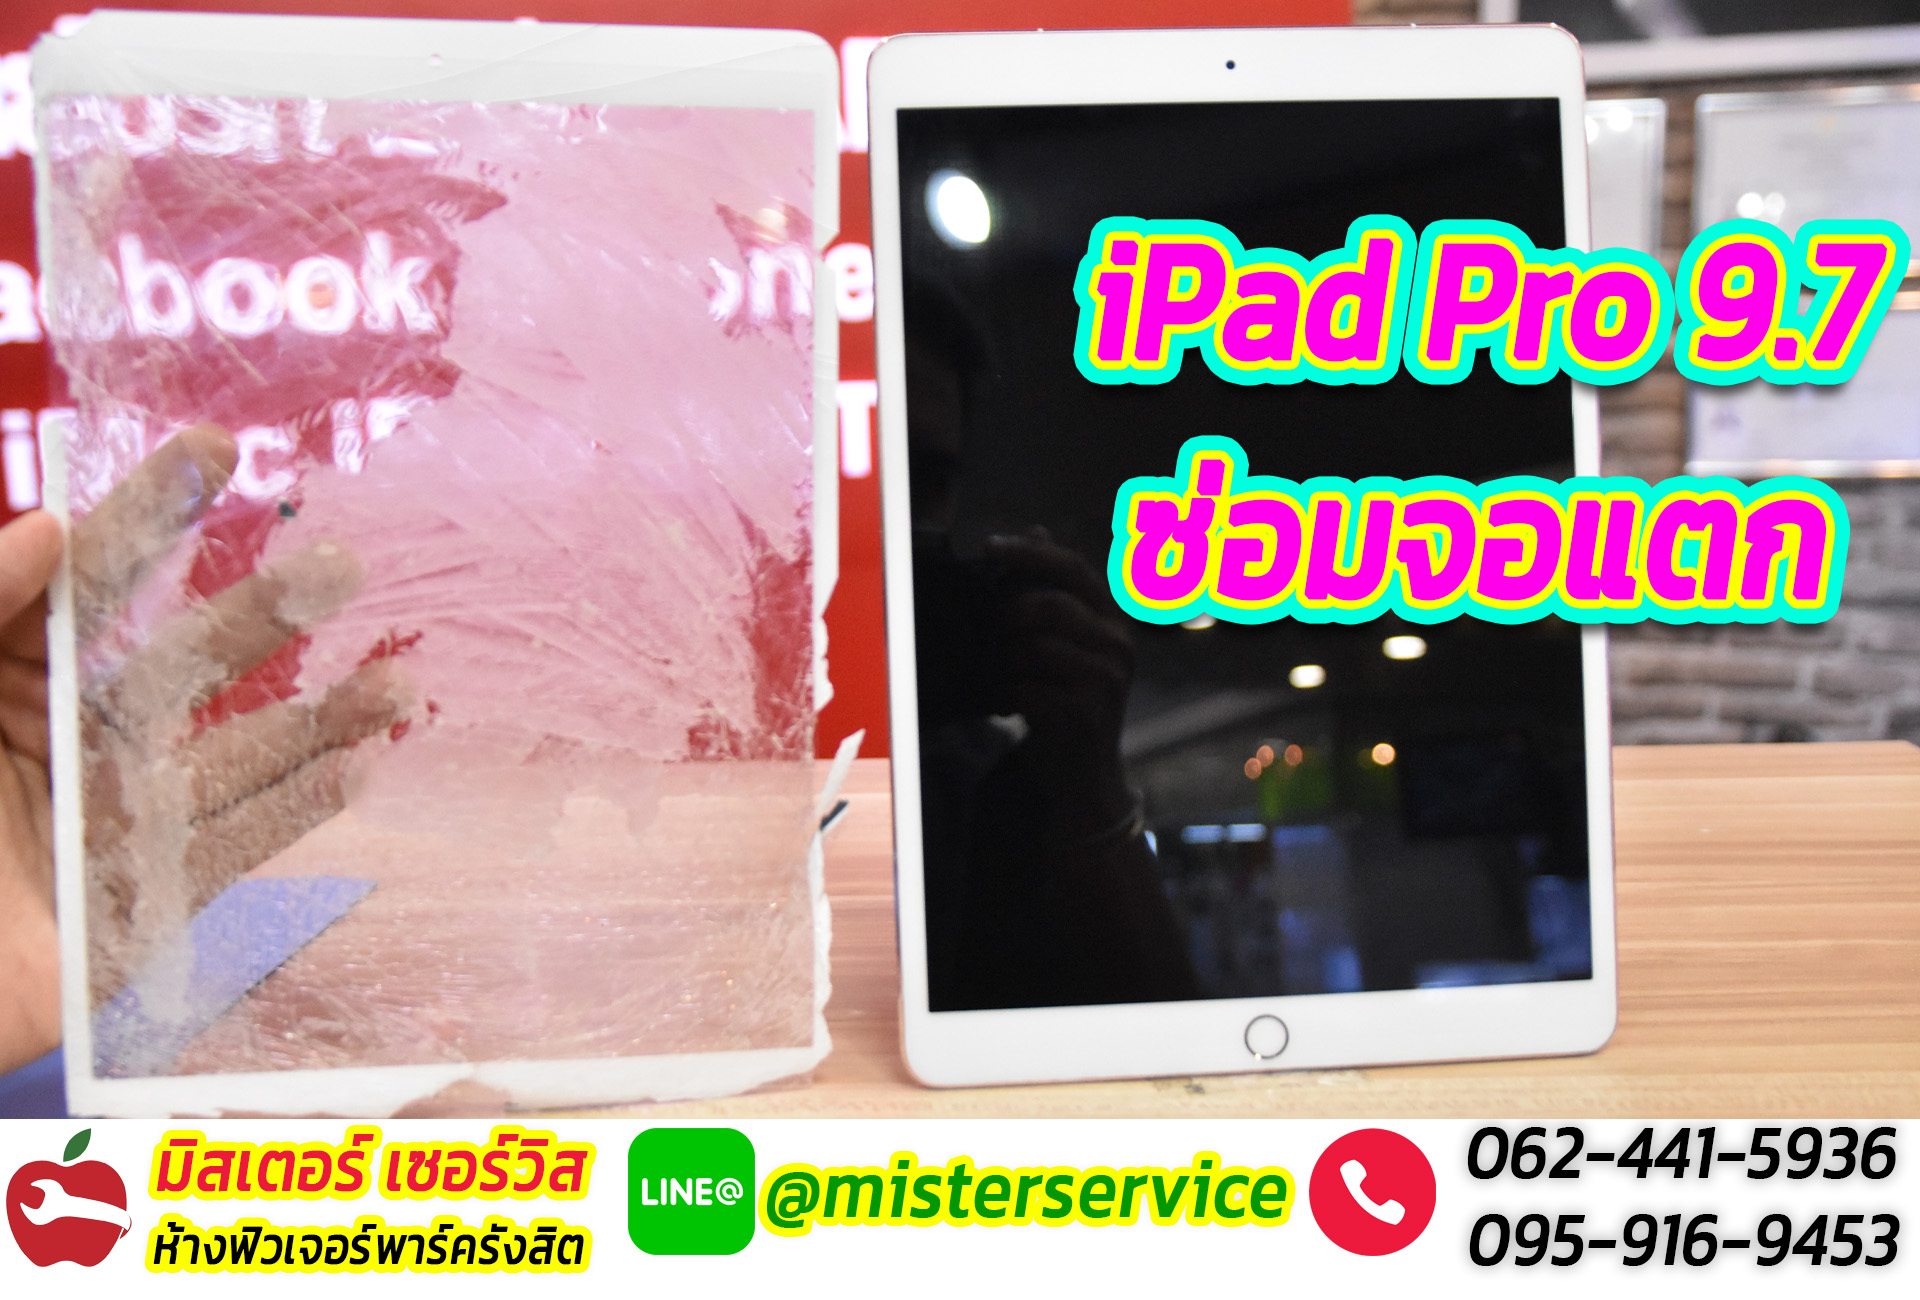 ร้านซ่อม iPad รังสิต 12